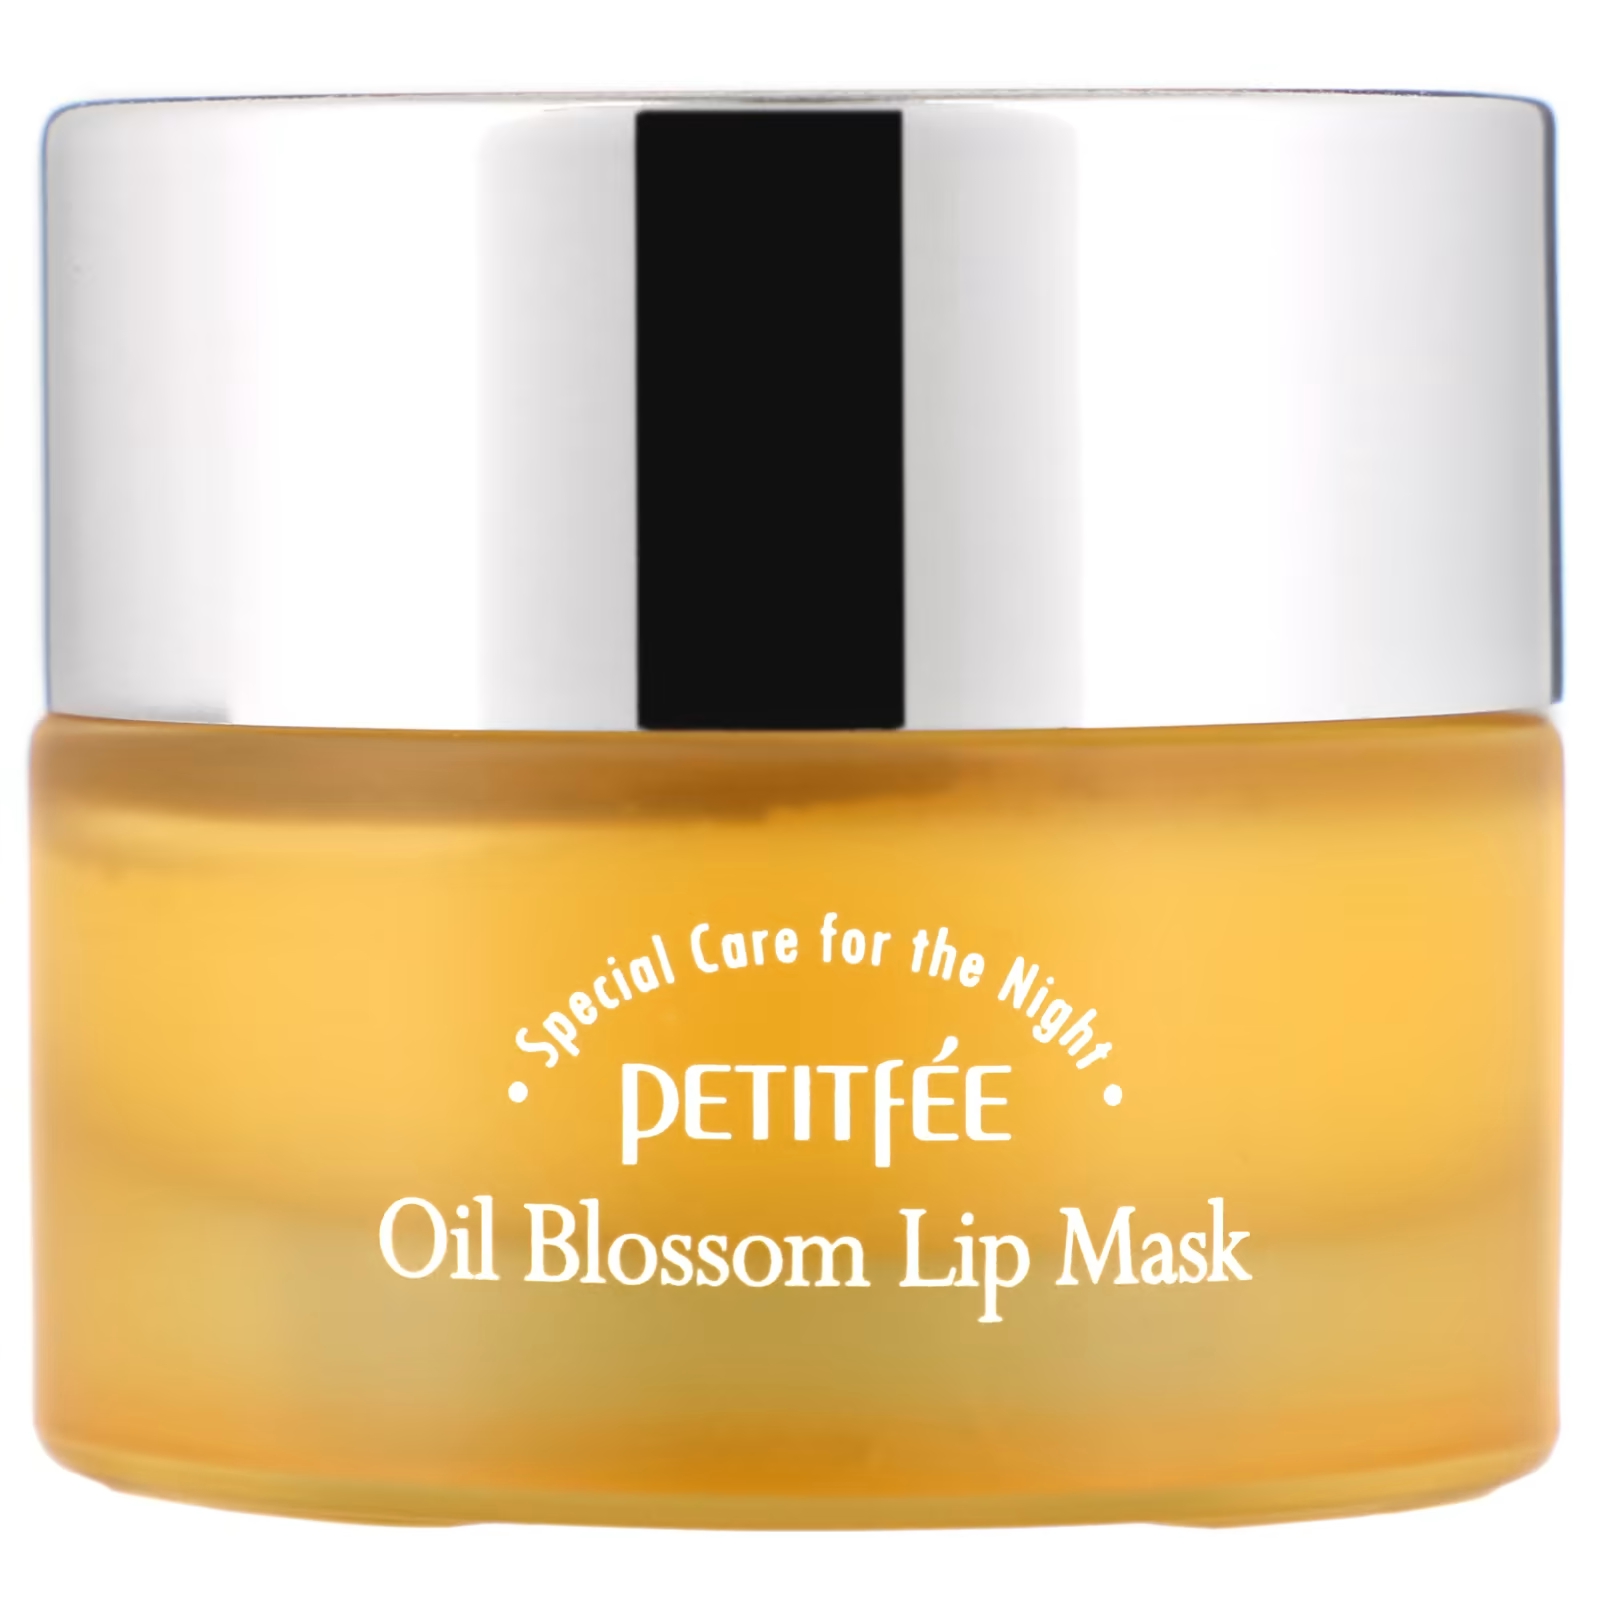 Маска для губ Petitfee Oil Blossom с облепиховым маслом, 15 г petitfee oil blossom маска для губ масло облепихи 15 г